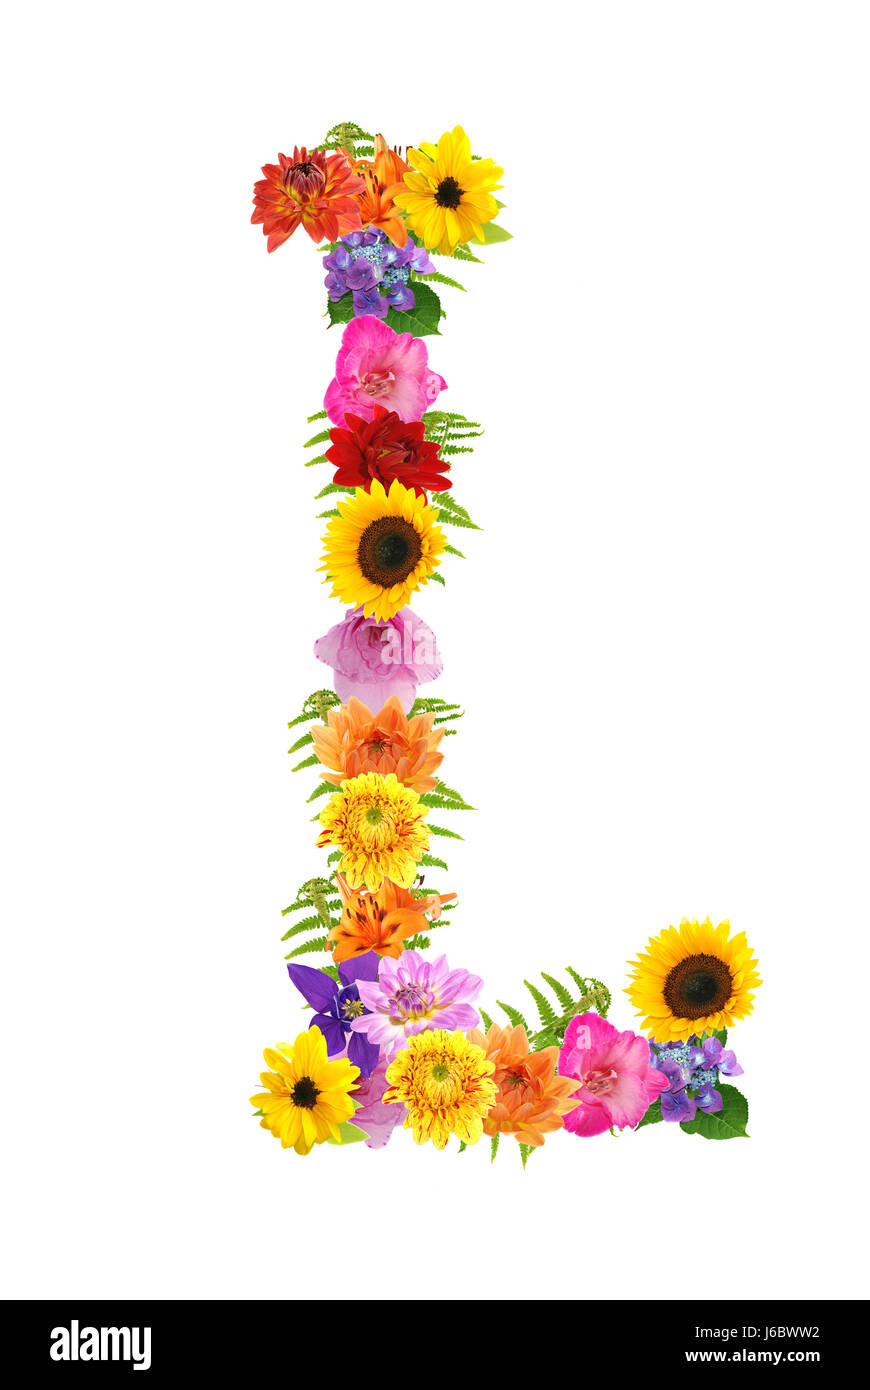 Blume Blumen Pflanze Buchstaben Buchstaben Alphabet farbig bunt wunderschön  Stockfotografie - Alamy